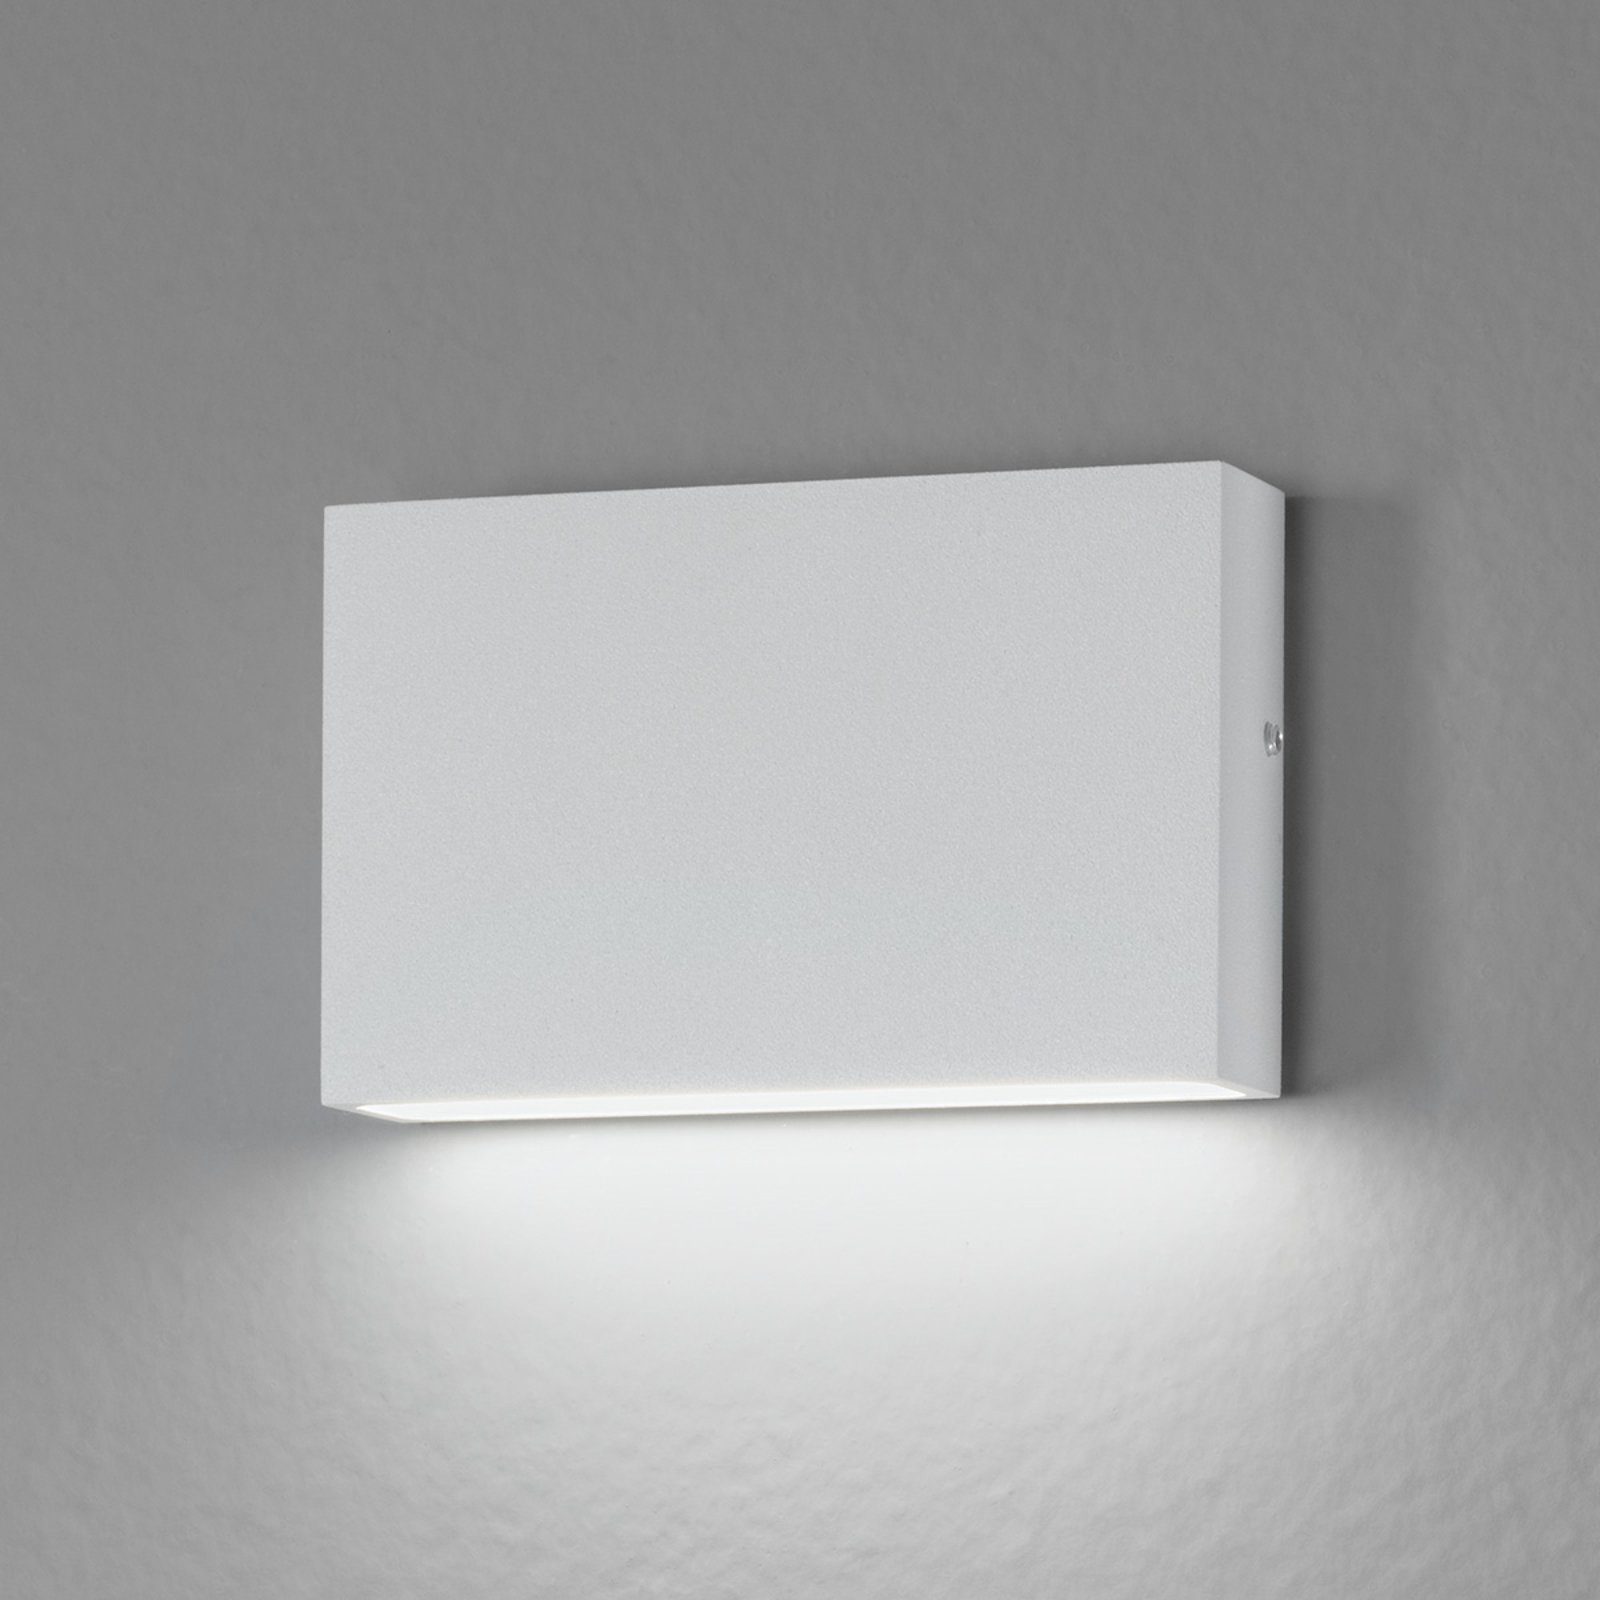 Für innen und außen - LED-Wandleuchte Flatbox